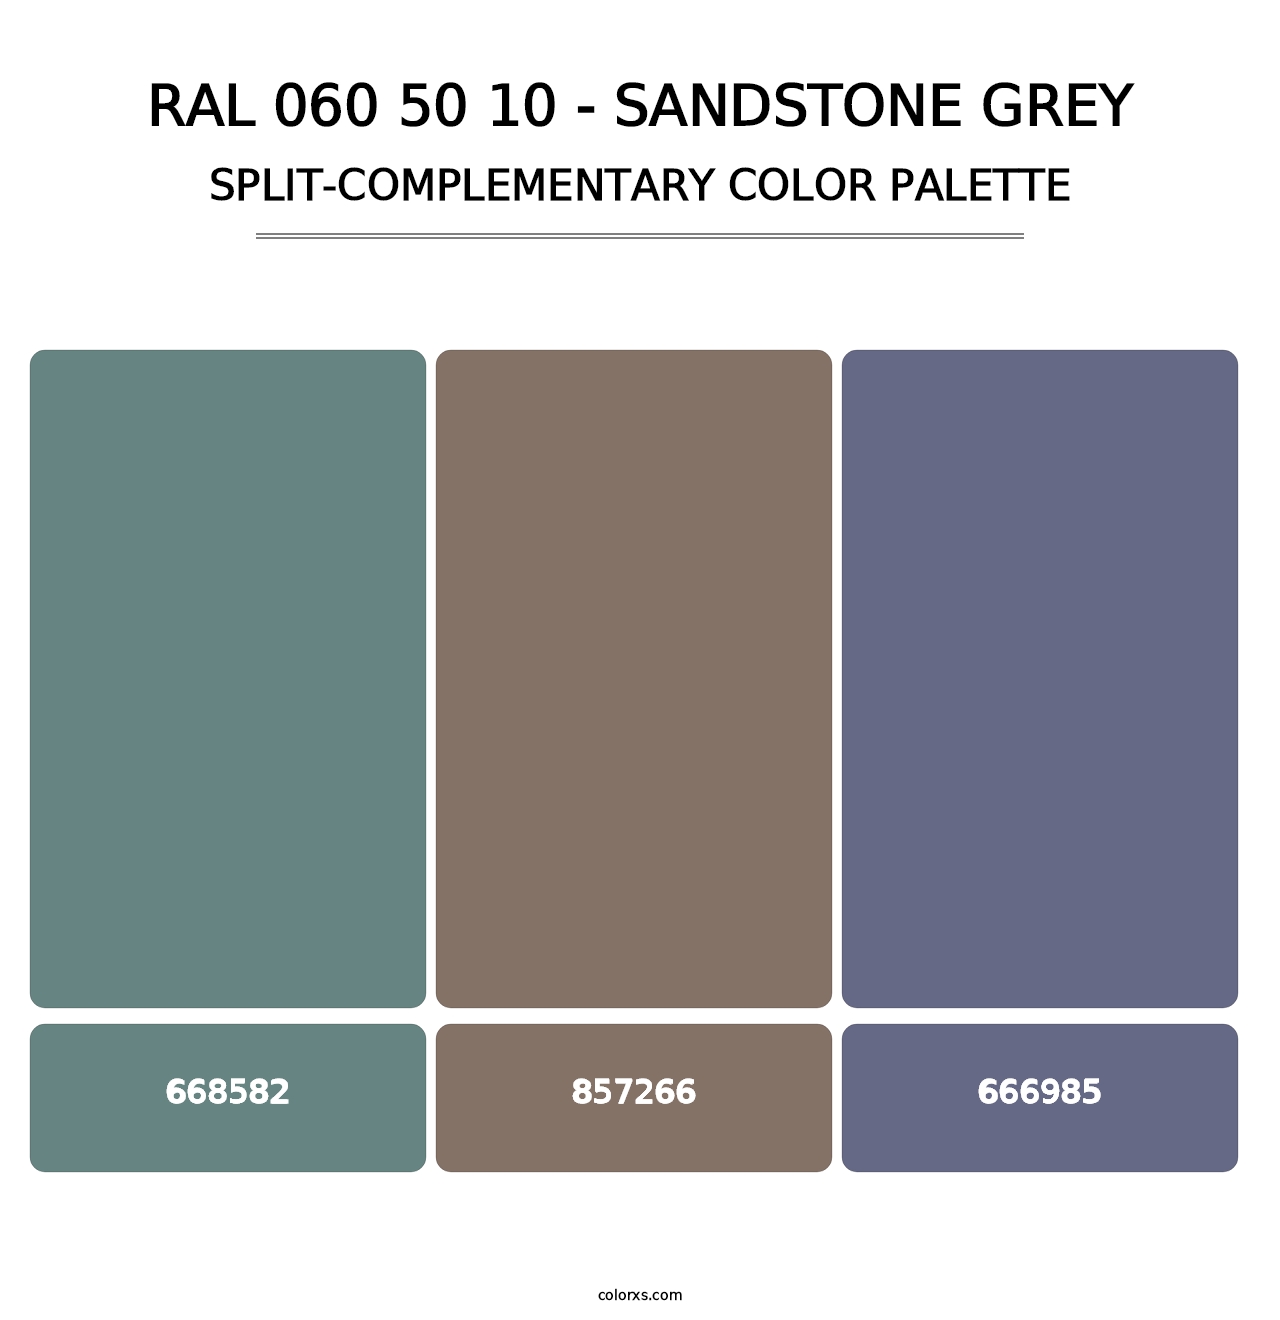 RAL 060 50 10 - Sandstone Grey - Split-Complementary Color Palette